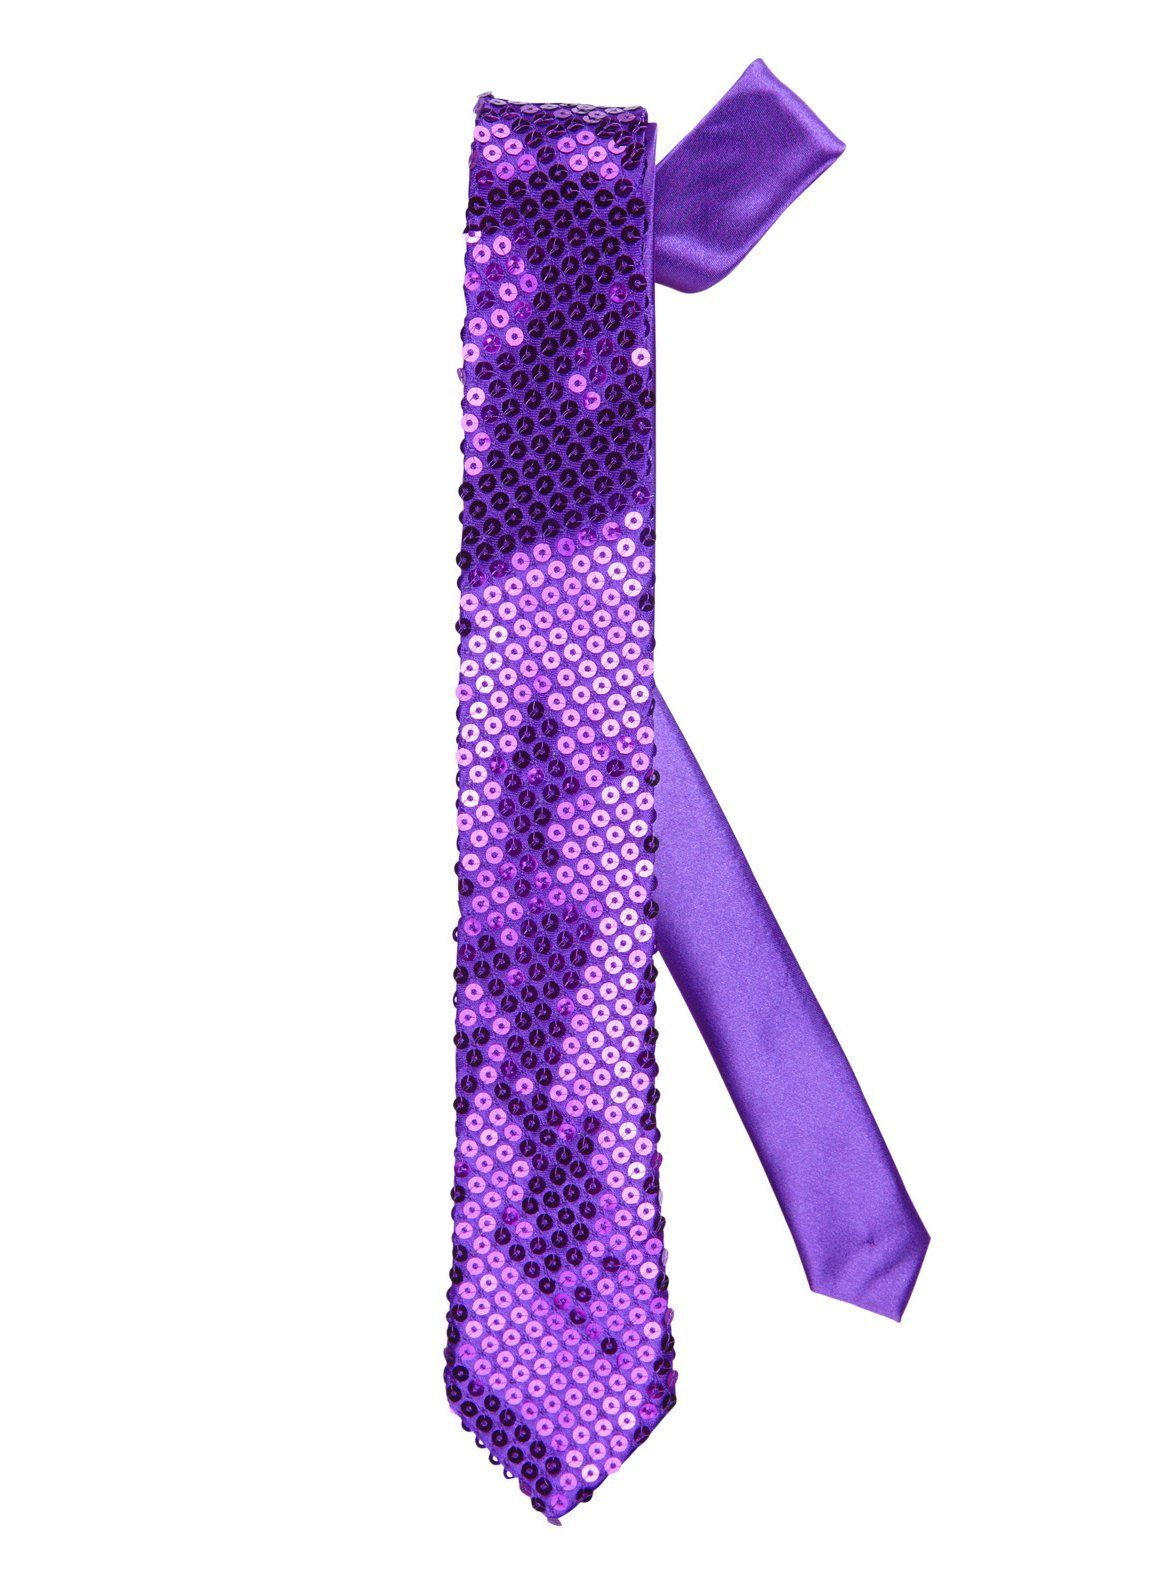 Widdmann Krawatte Krawatte Pailletten violett Krawatte in mittlerer Breite für jeden Zweck